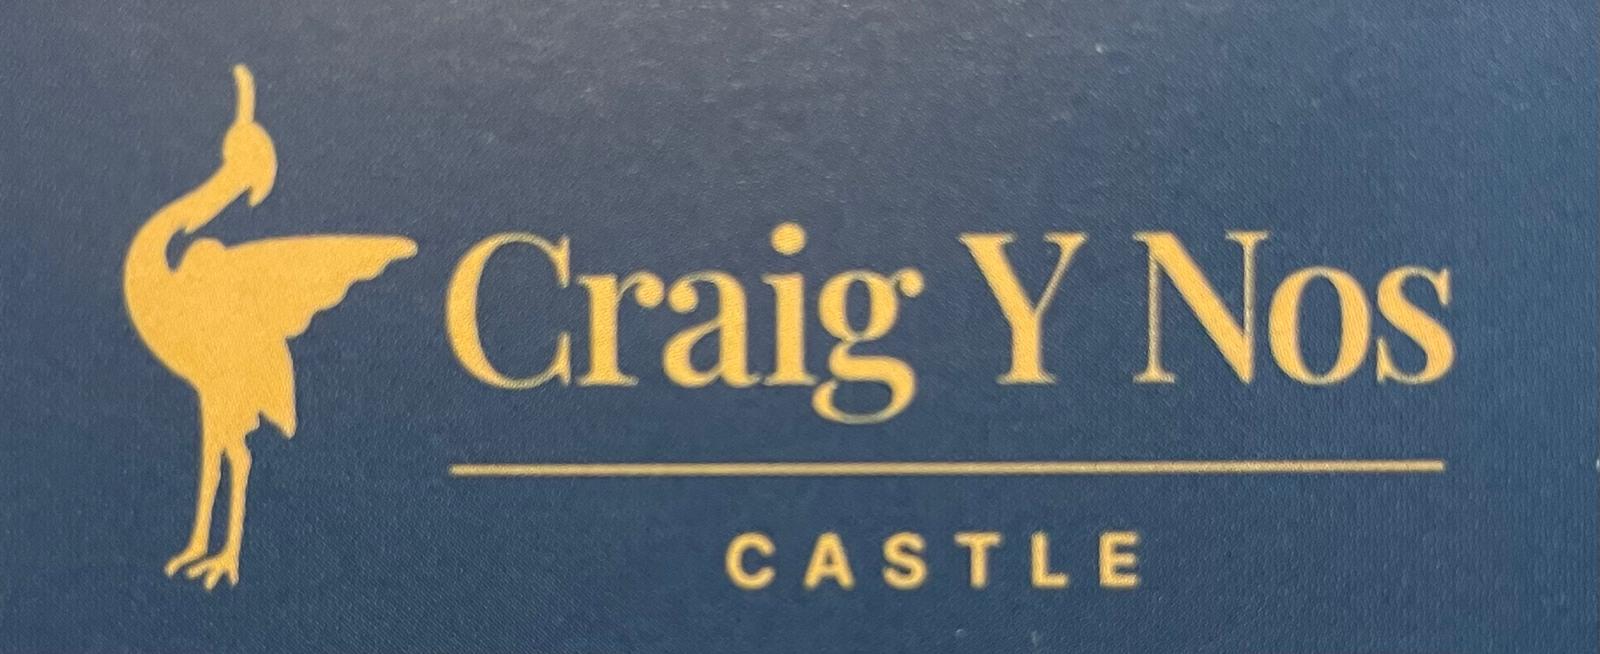 Craig y Nos Castle, wedding venue in South Wales